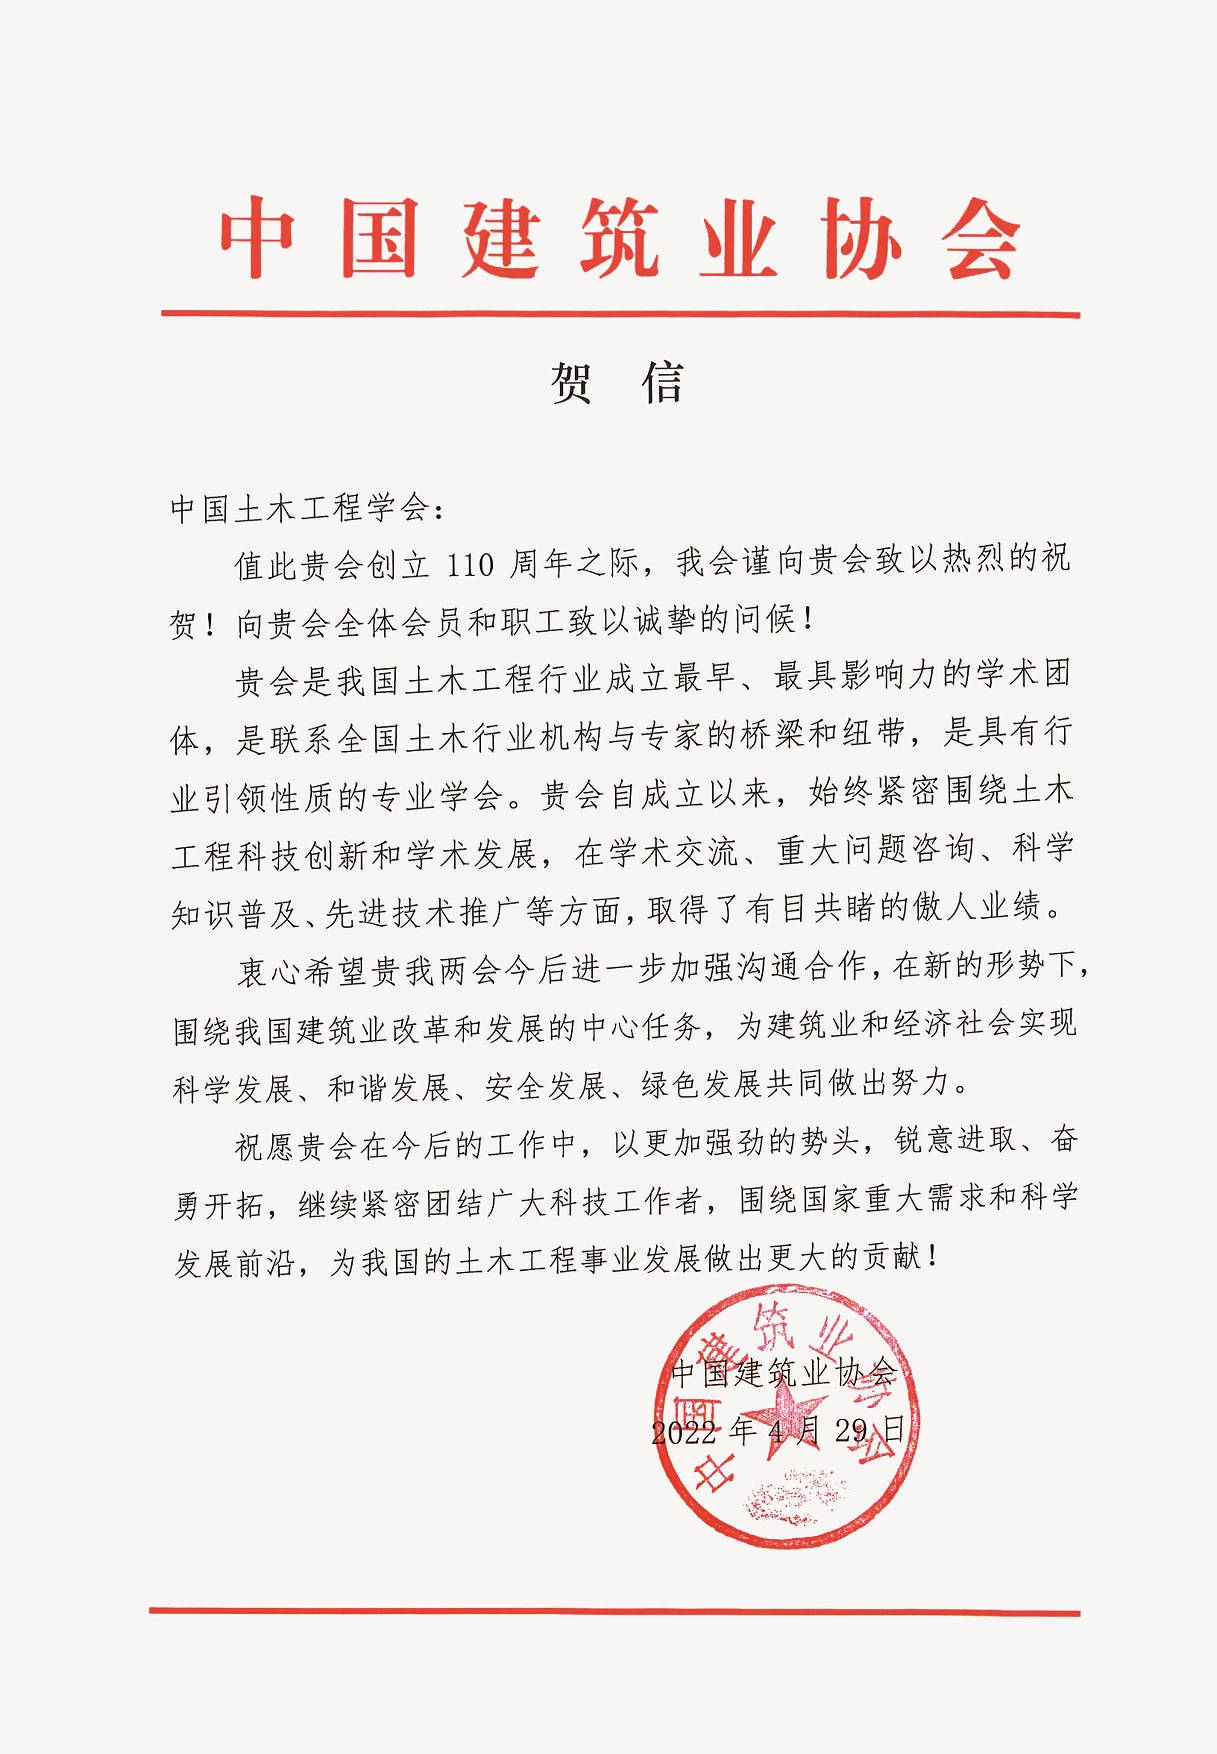 中国建筑业协会贺信